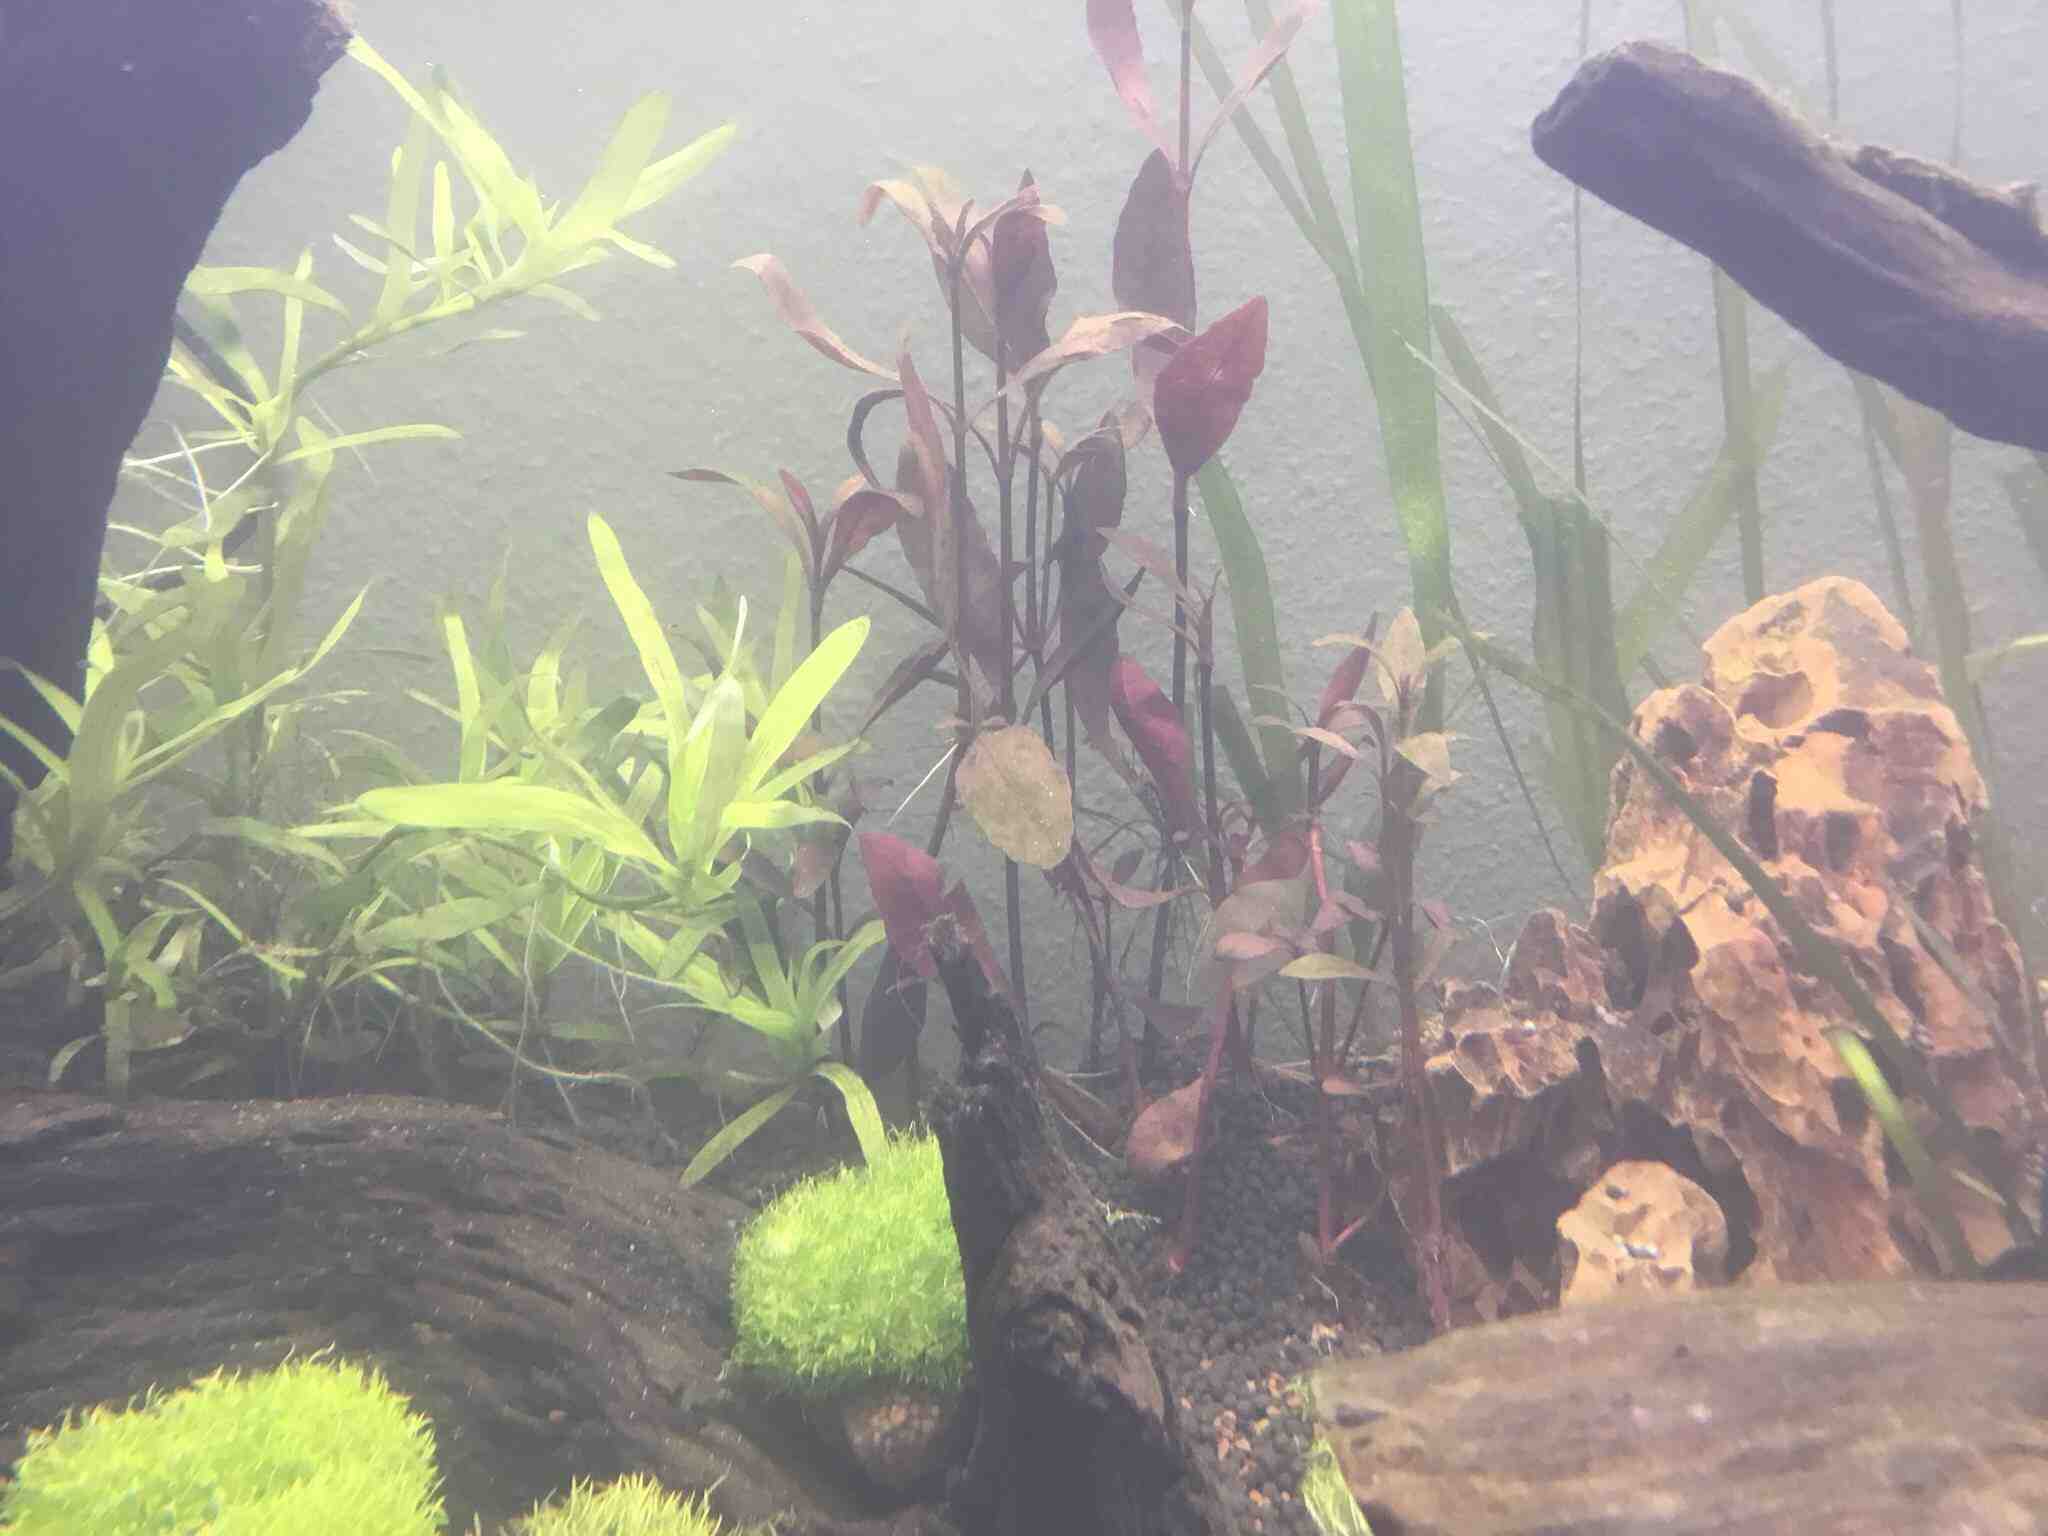 Comment faire pousser les plantes d'aquarium plus rapidement?